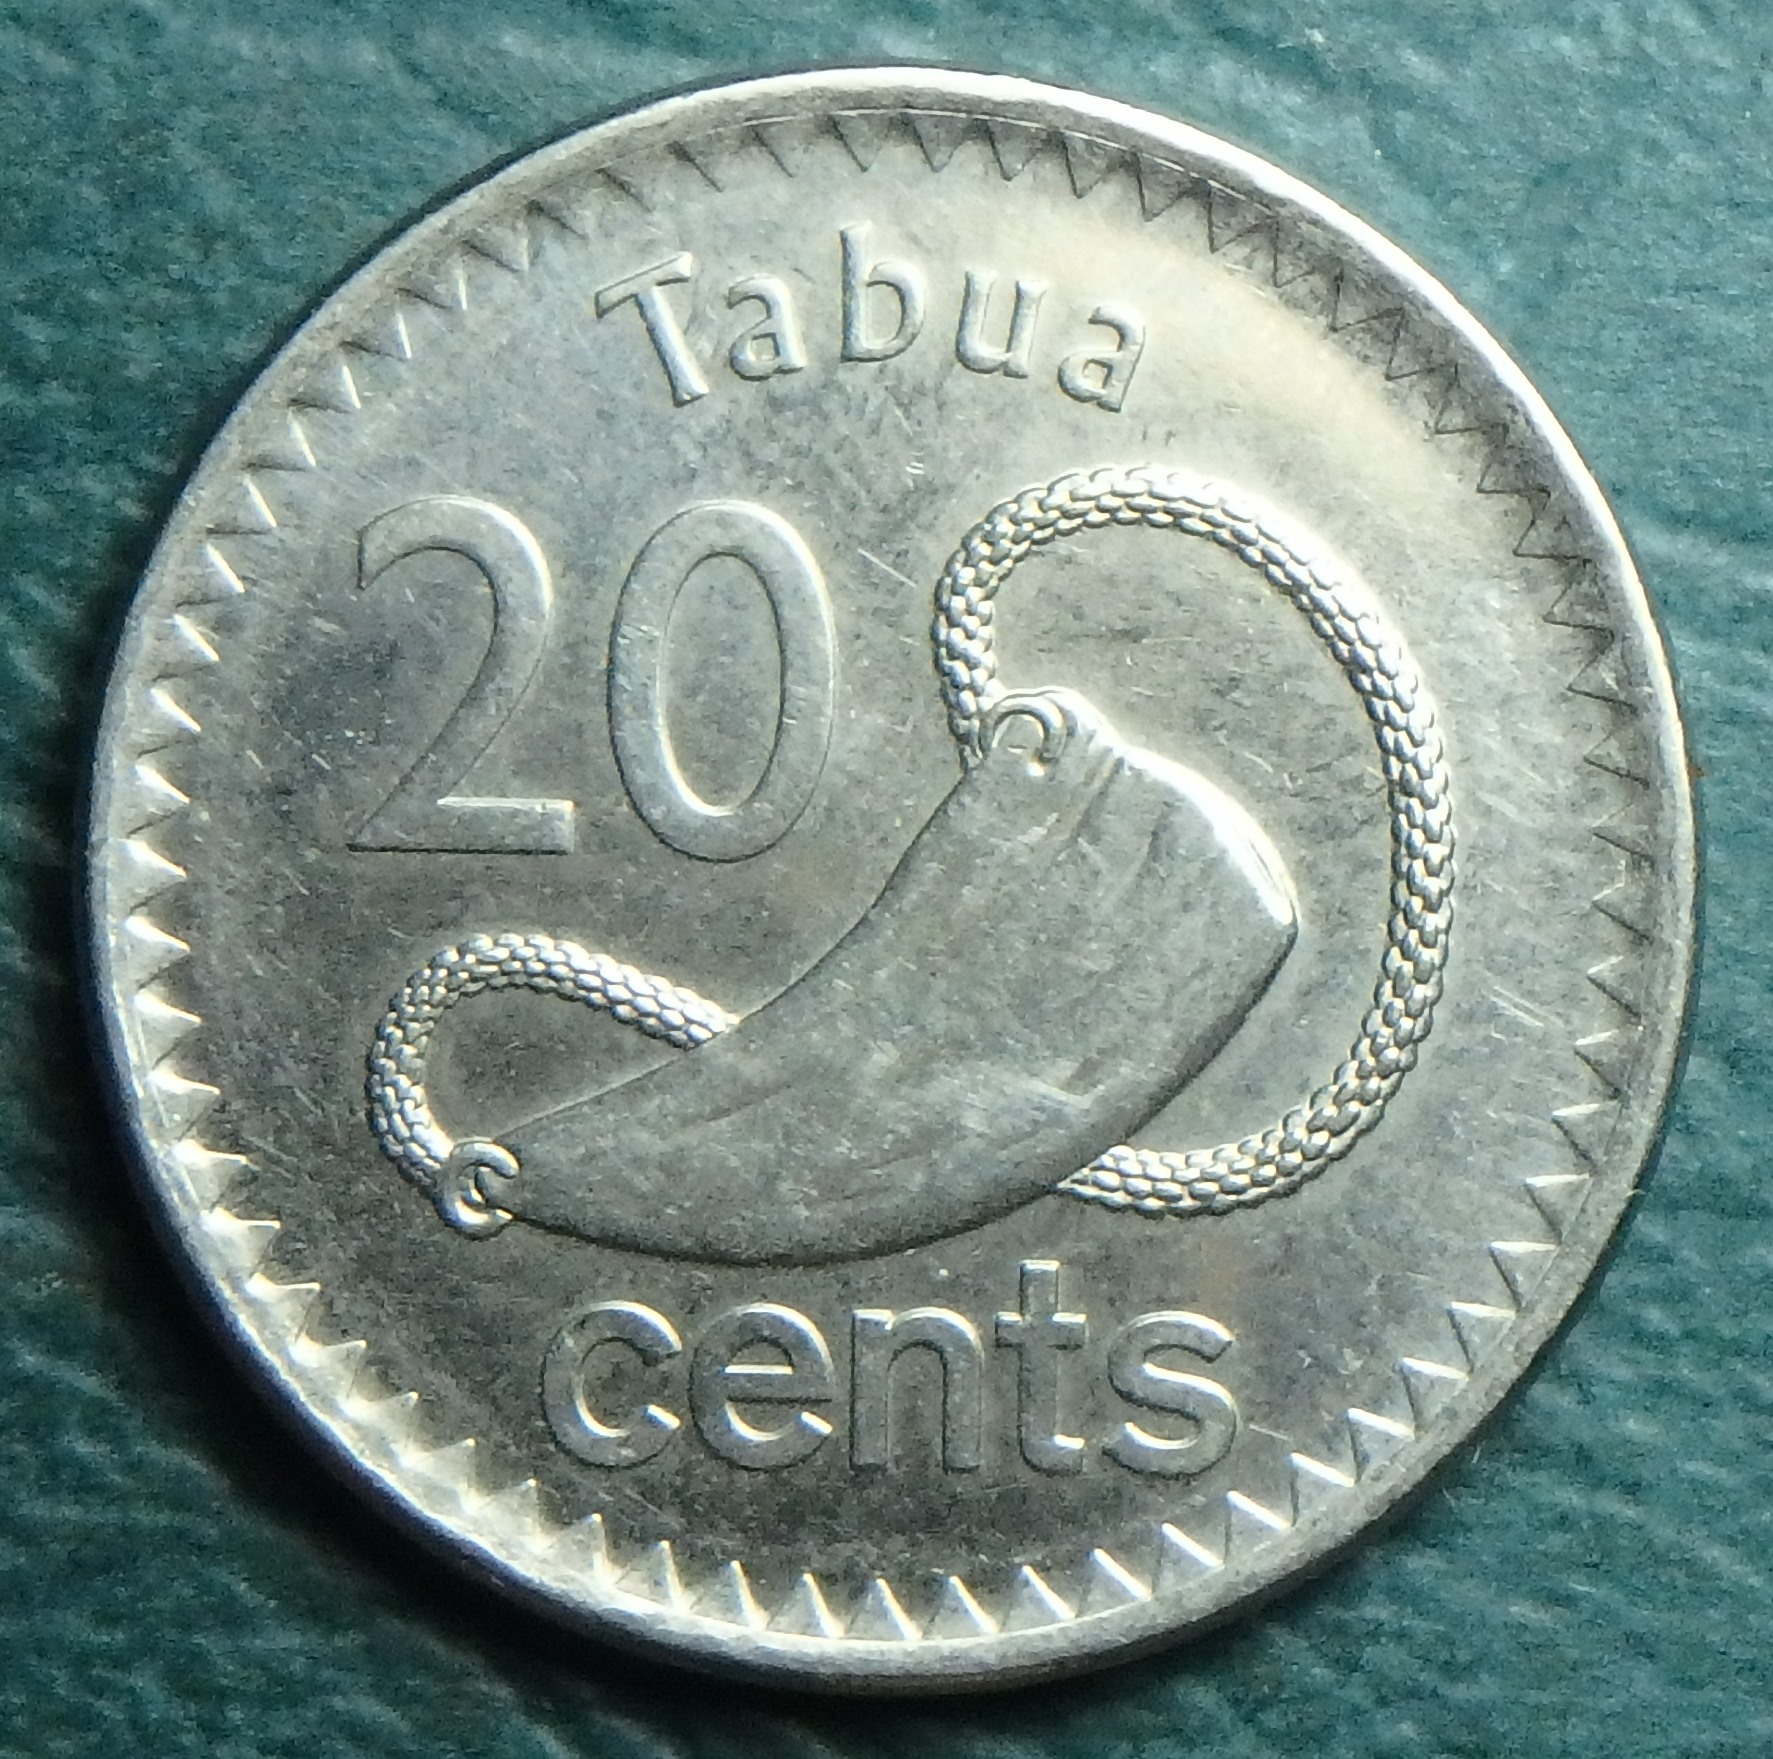 2012 FJ 20 cents rev.JPG